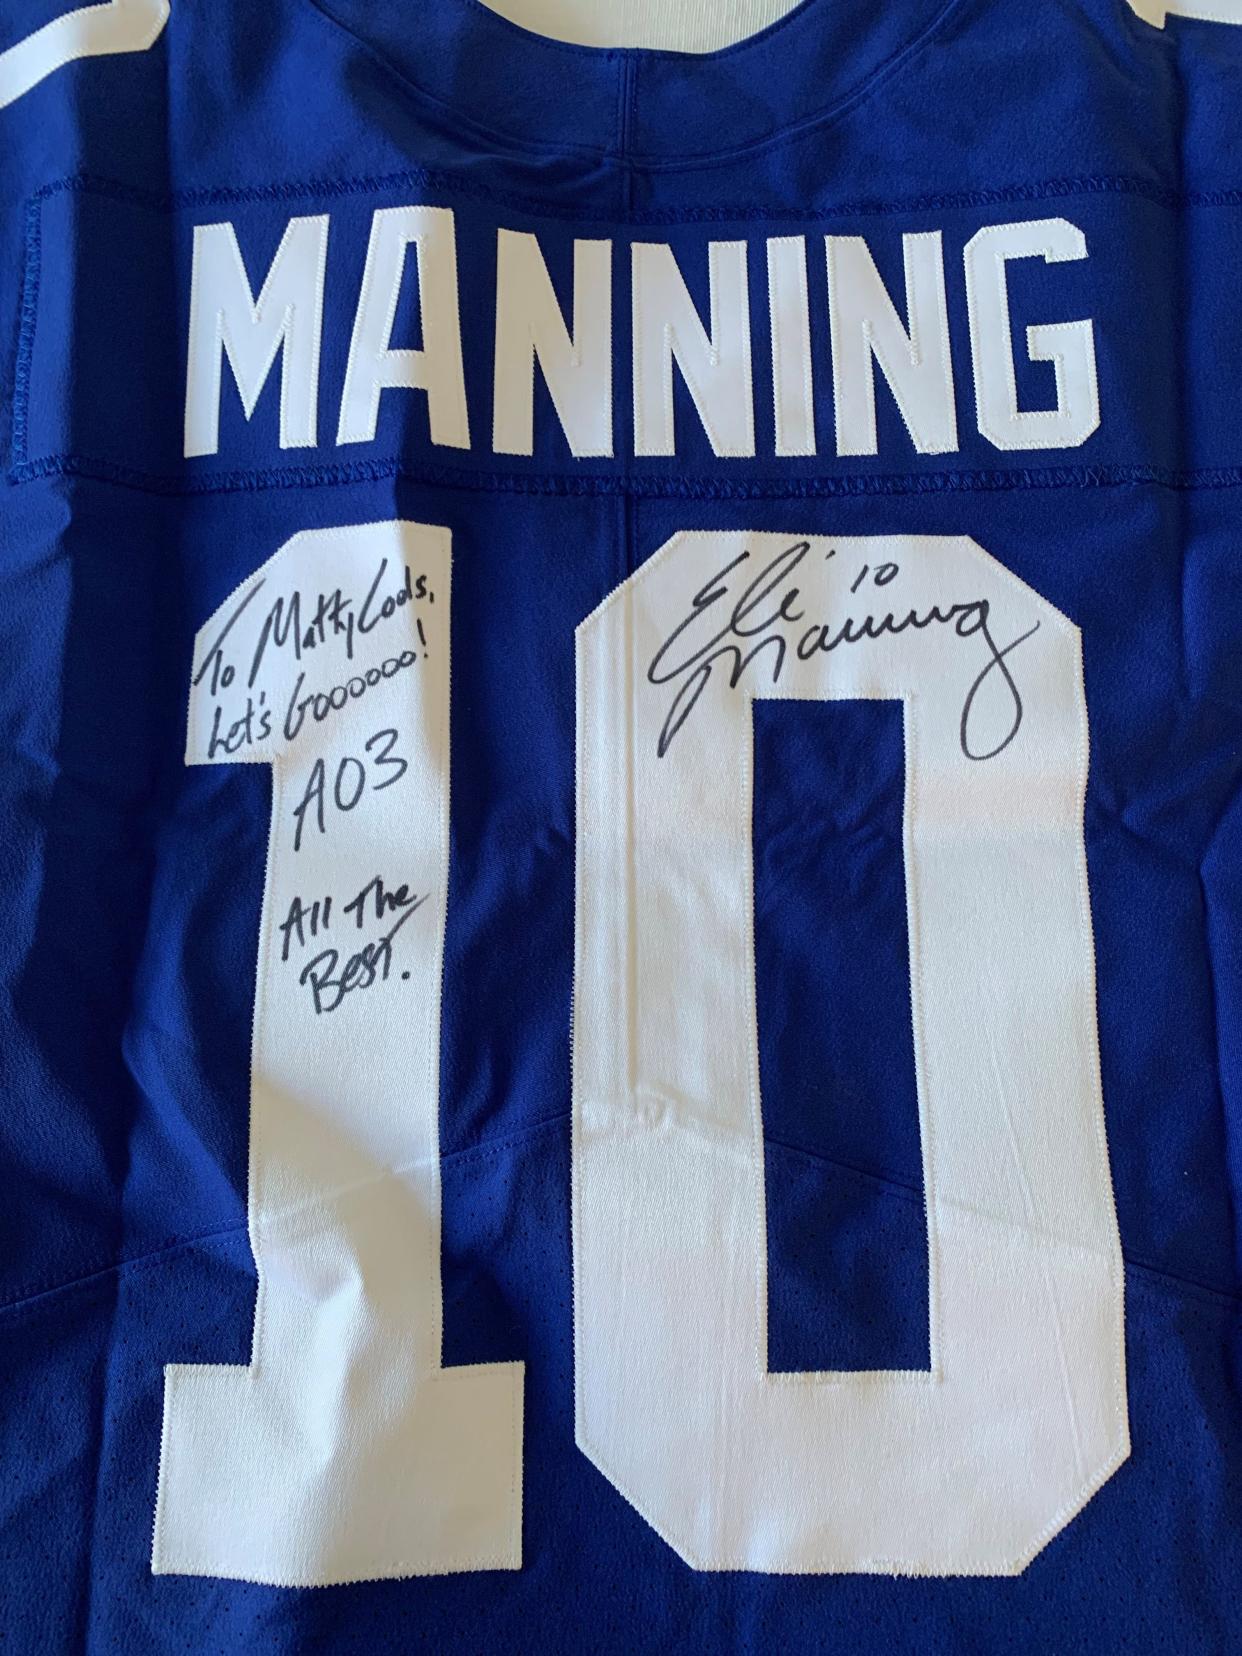 The signed jersey Eli Manning sent to Matt Newman